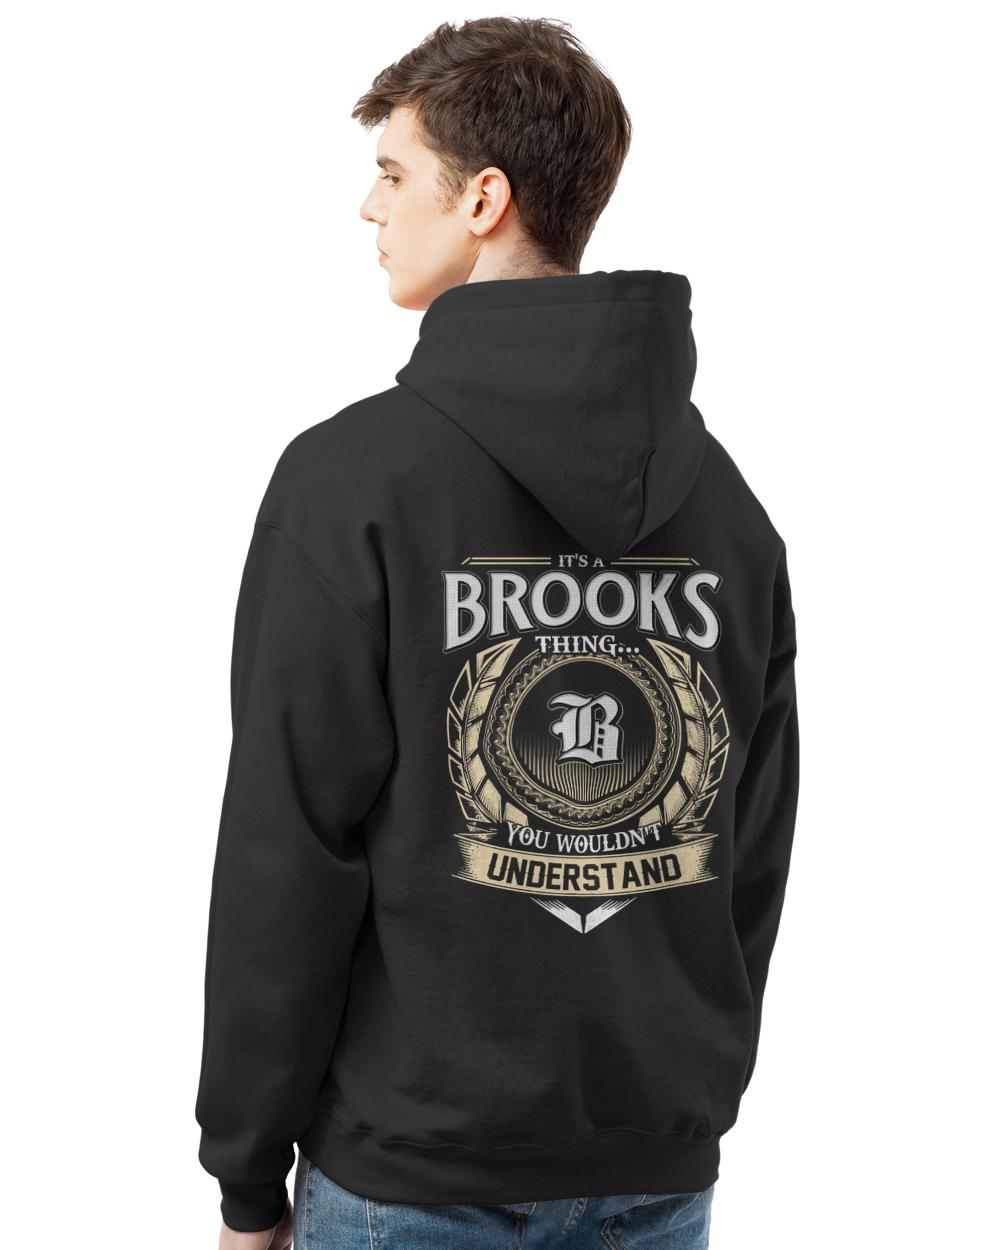 BROOKS-13K-46-01